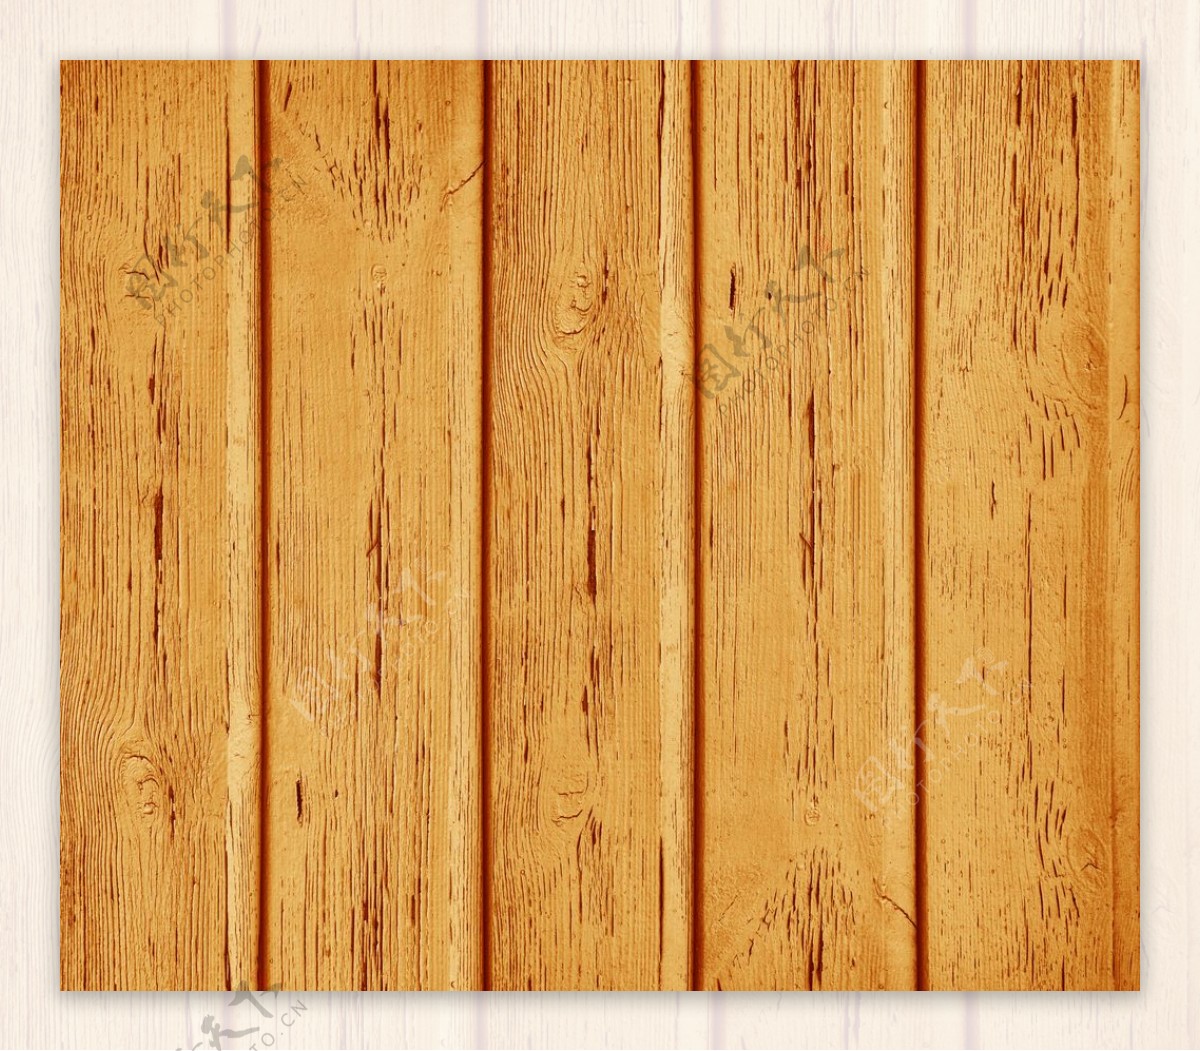 红黑色木板素材,旧木板素材,简约木板素材,木板素材_ps木板素材,红黑色木板素材,_小龙文挡网